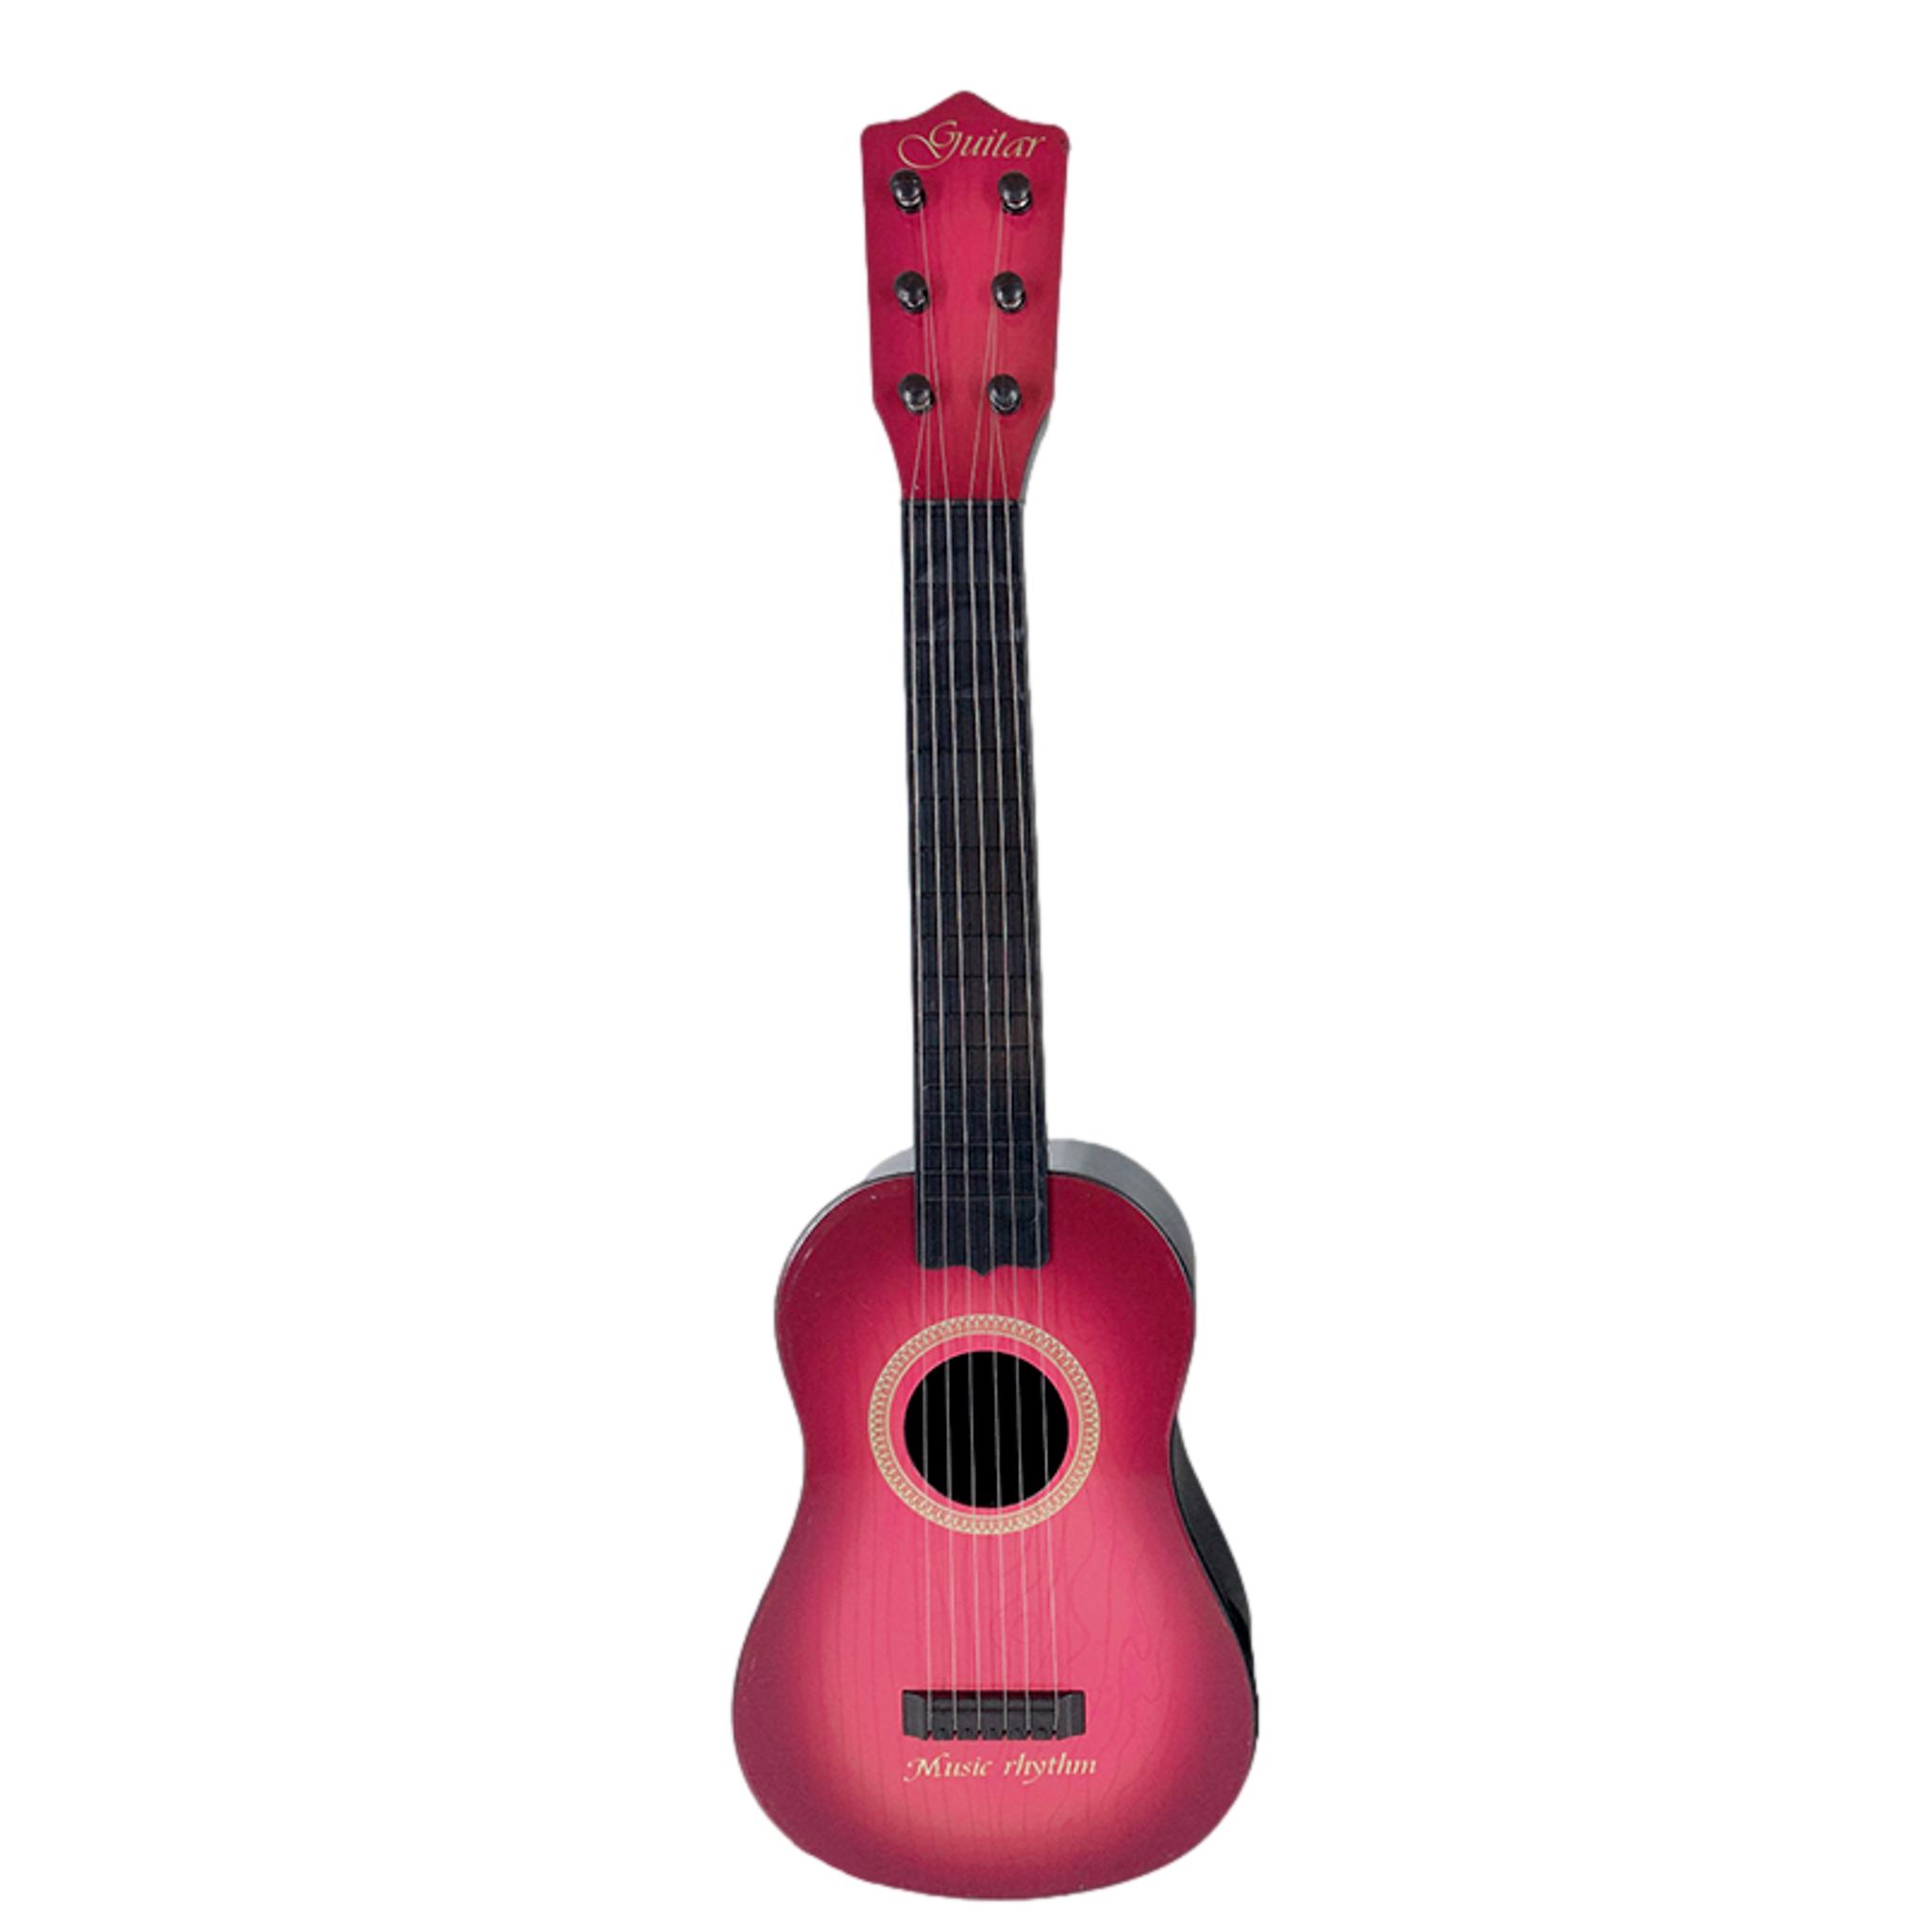 Chitara mini, Music, pentru copii, cu 4 corzi, roz